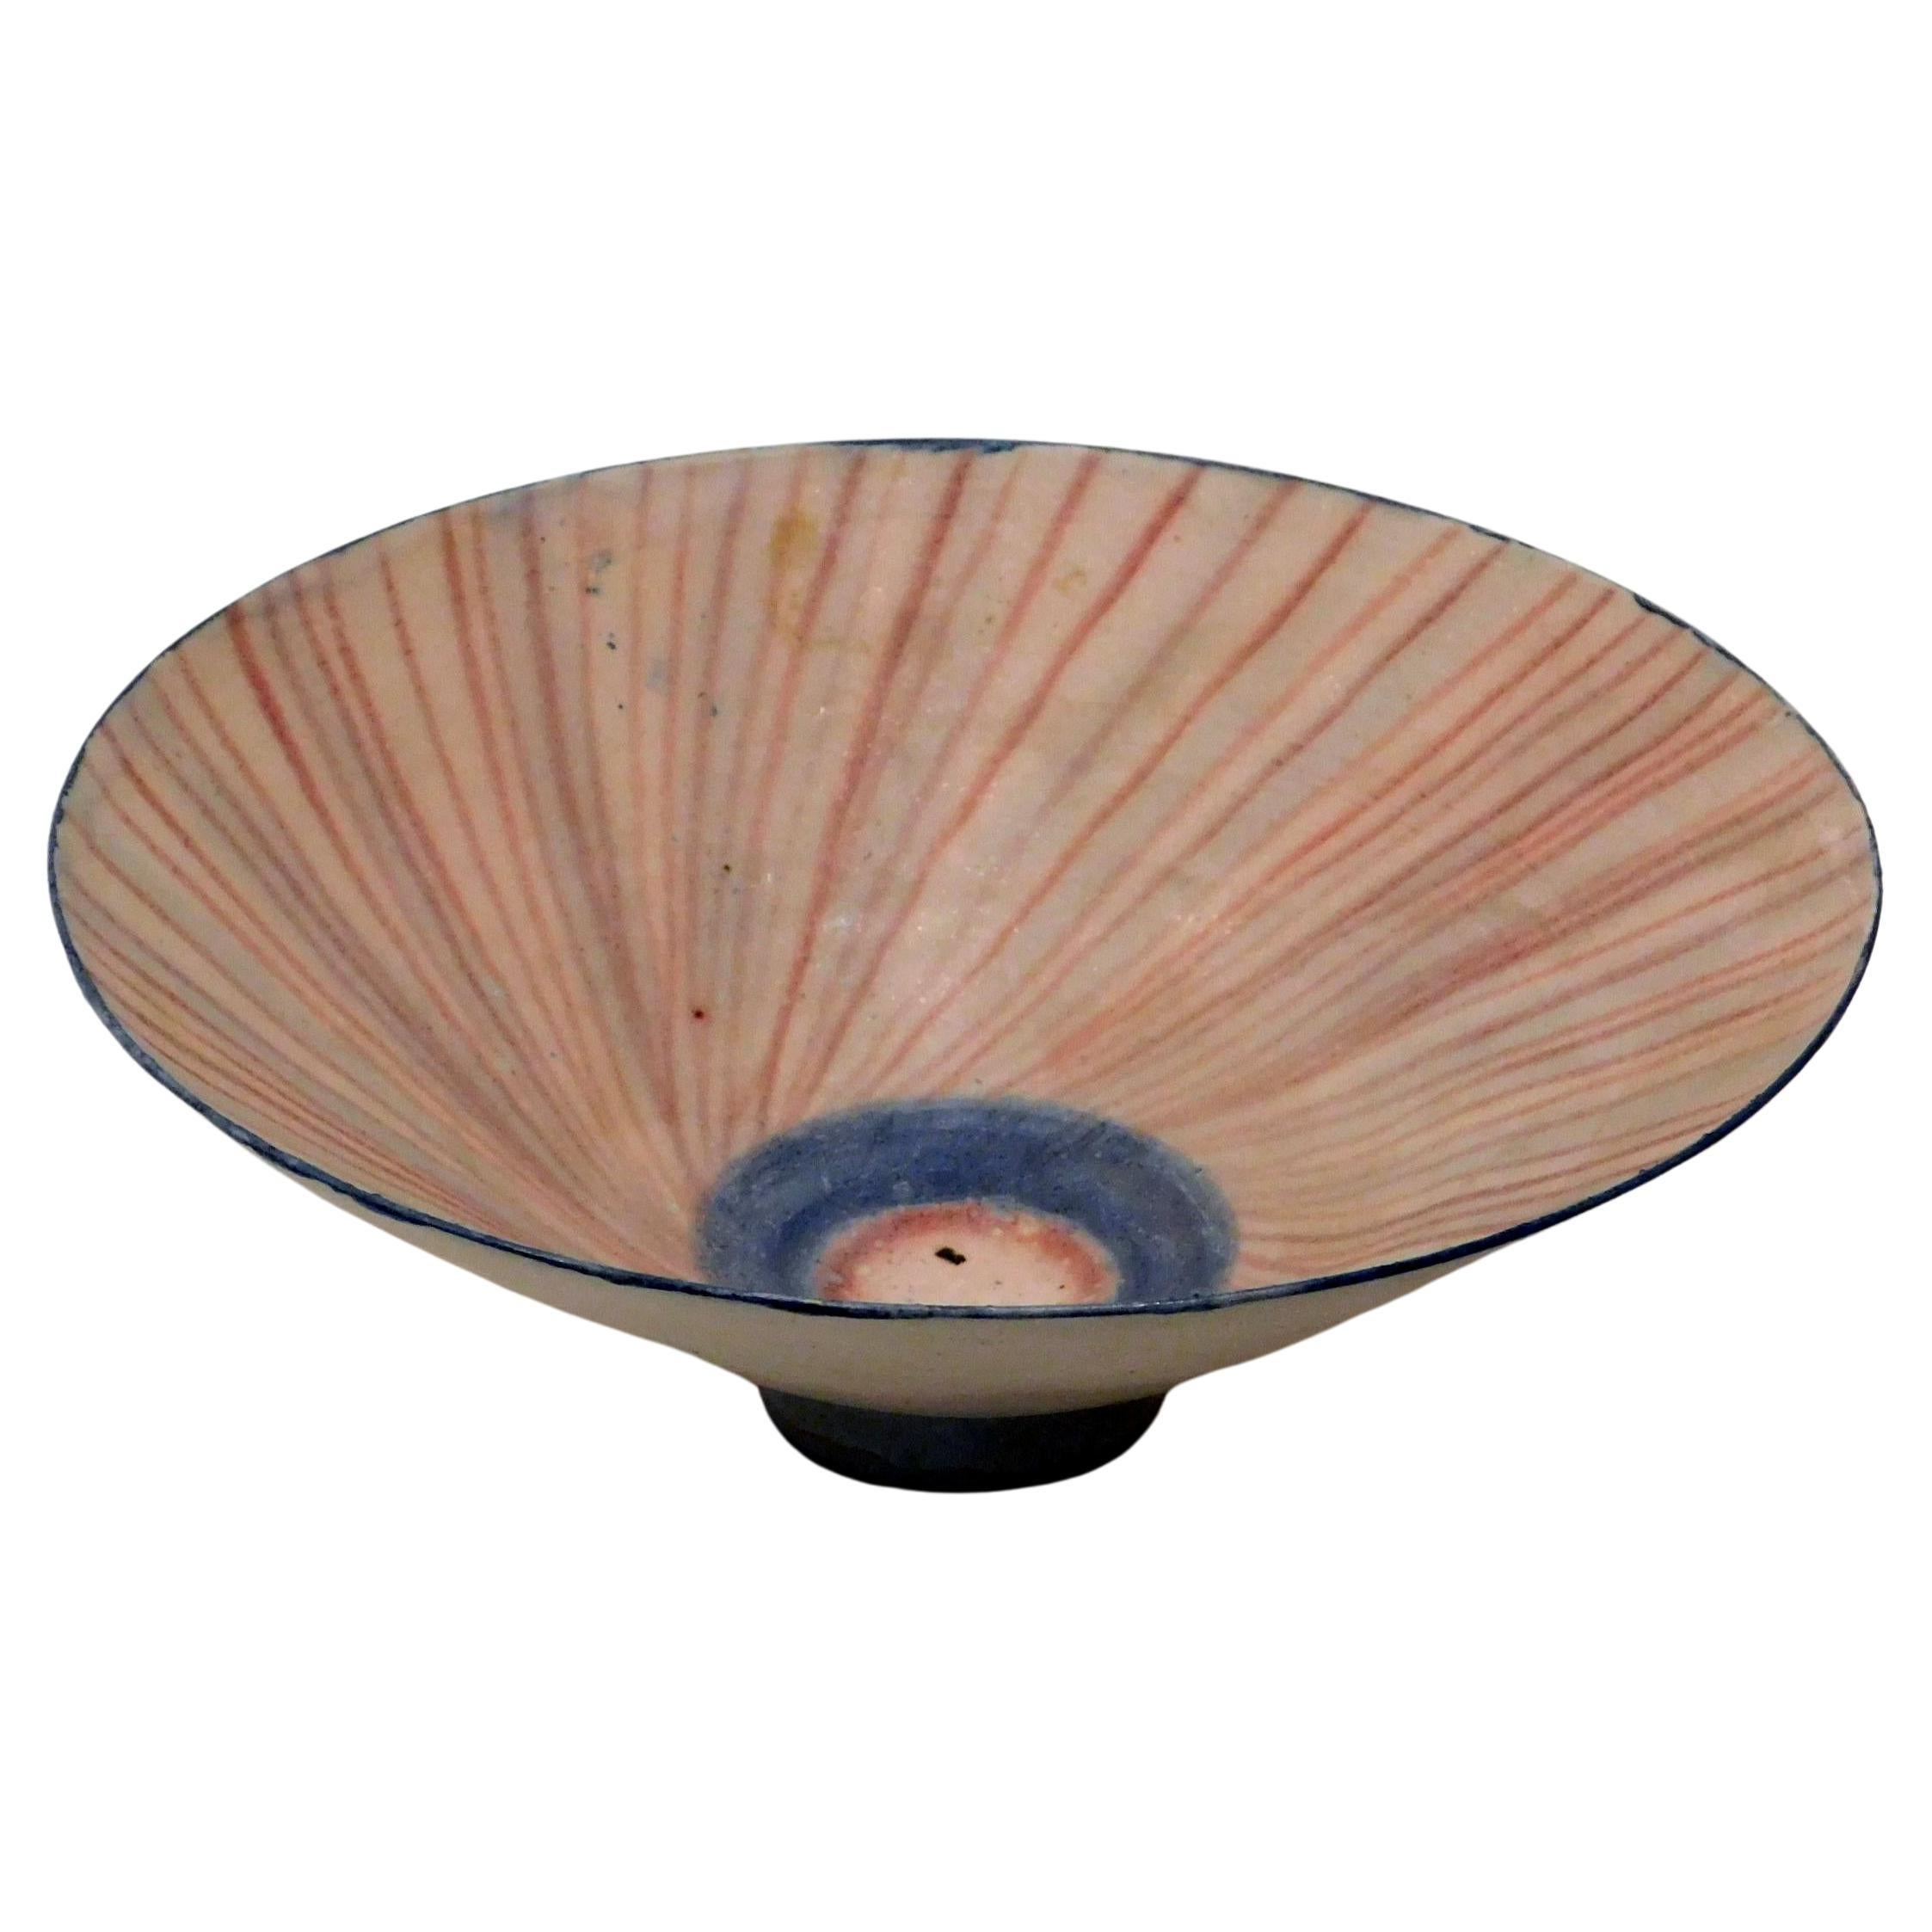  Emmanuel Cooper Important British Ceramist Flared Footed Studio Bowl For Sale